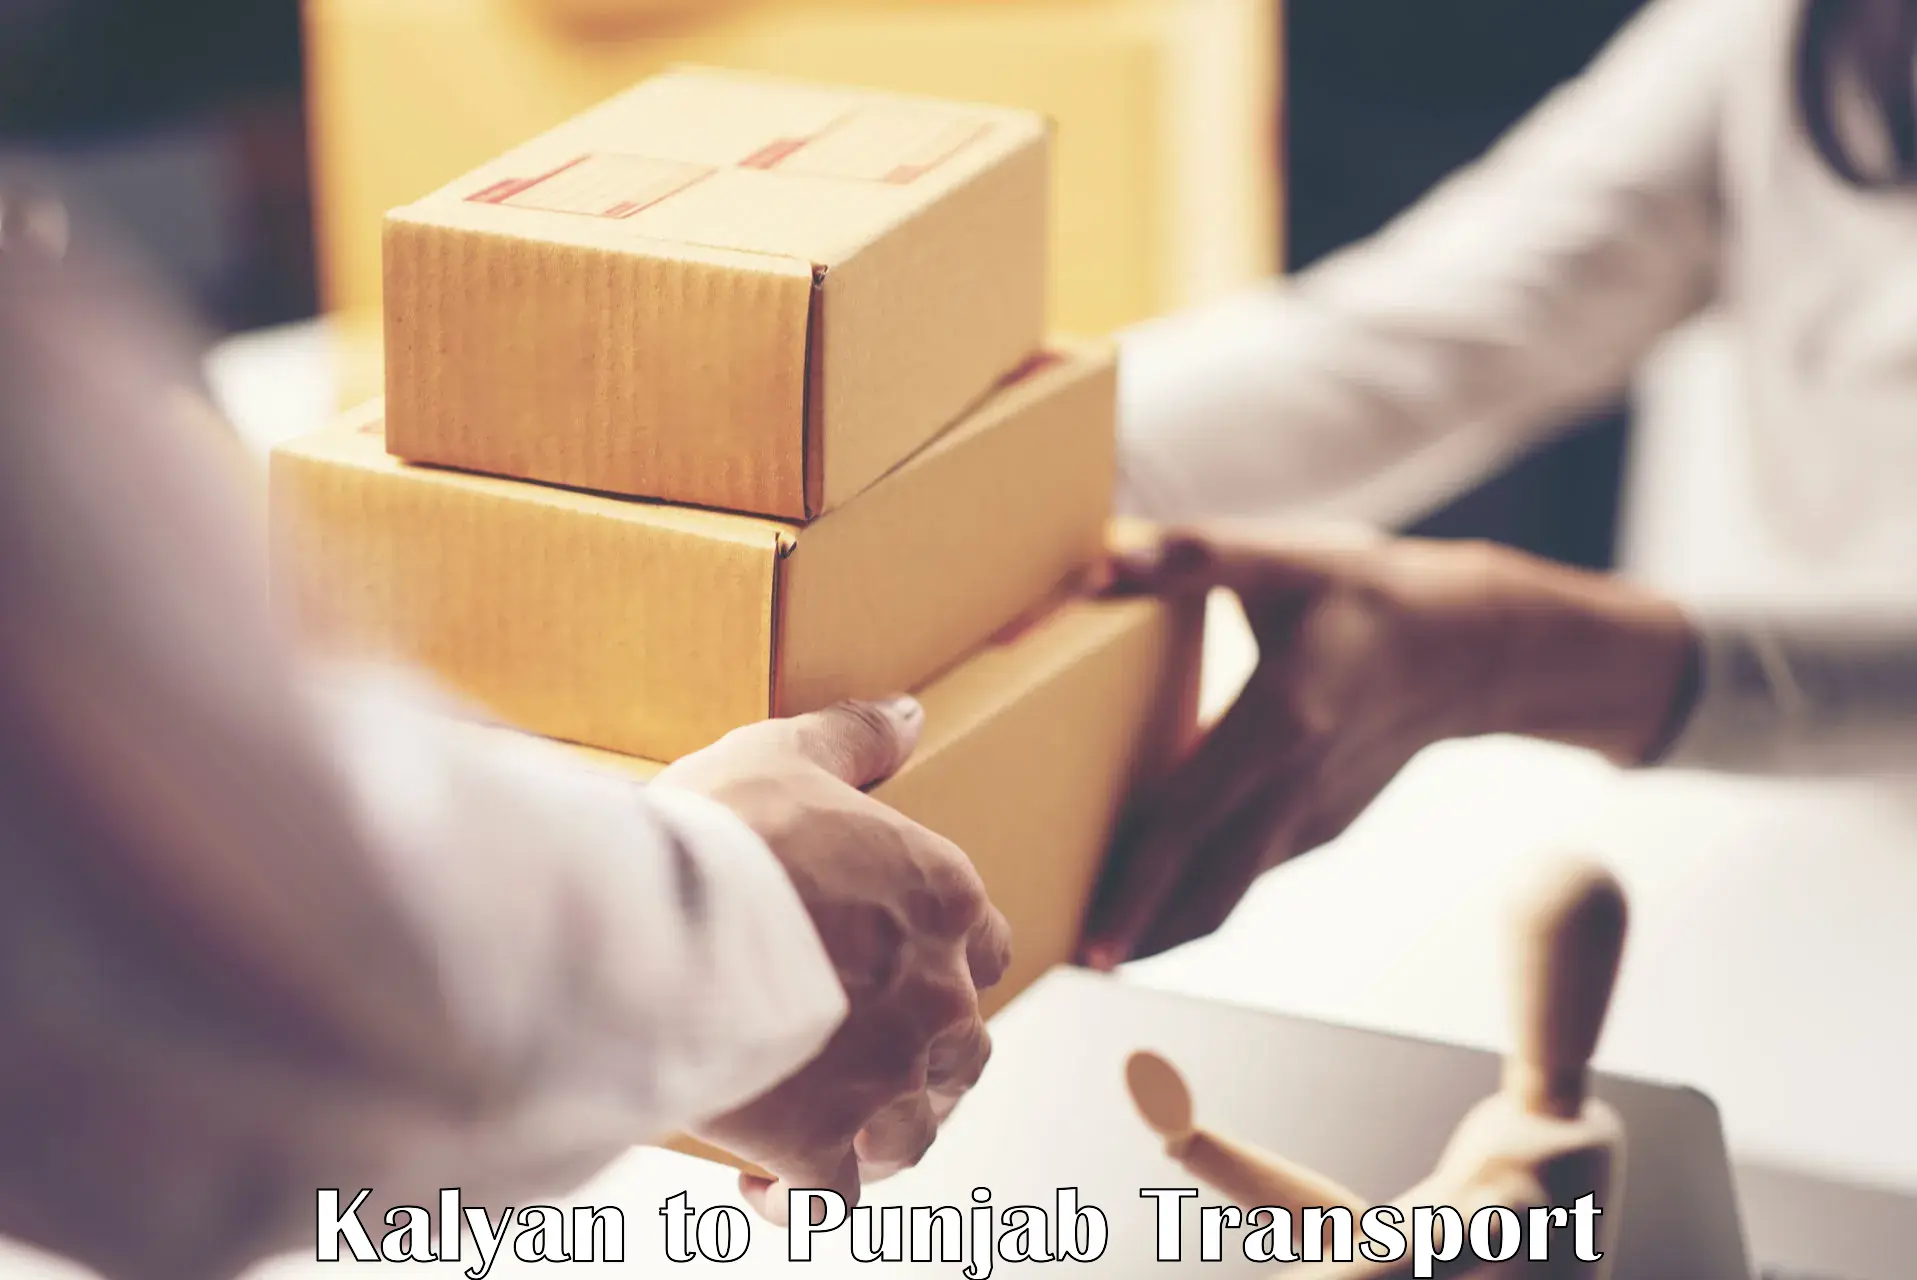 Air cargo transport services Kalyan to Punjab